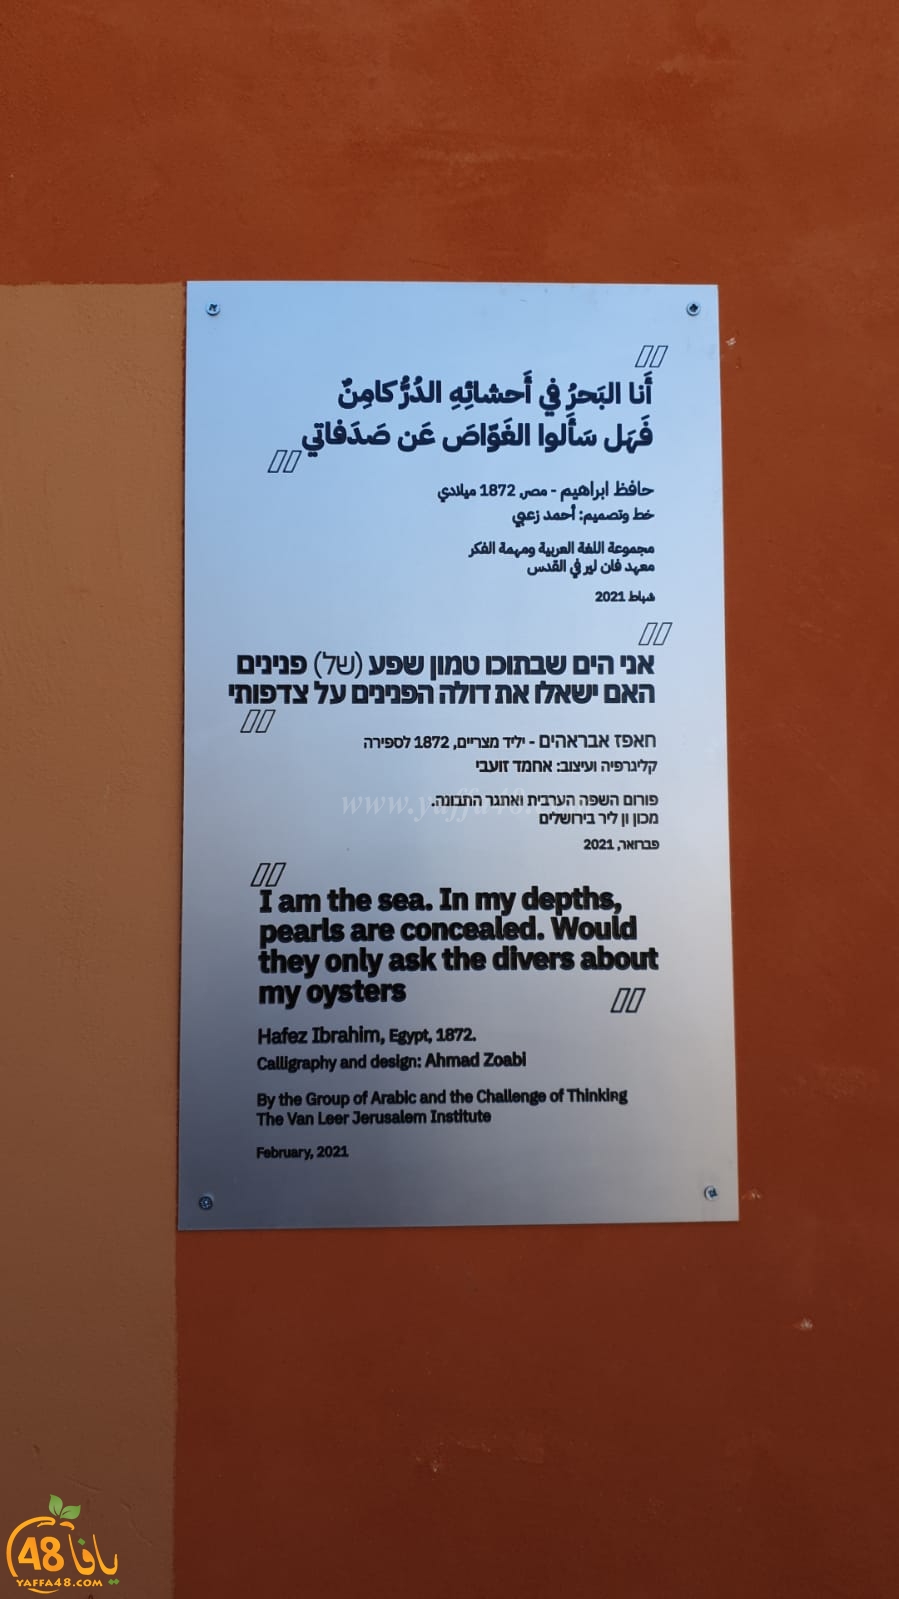 تدشين جدارية للشاعر حافظ ابراهيم في مدينة يافا 